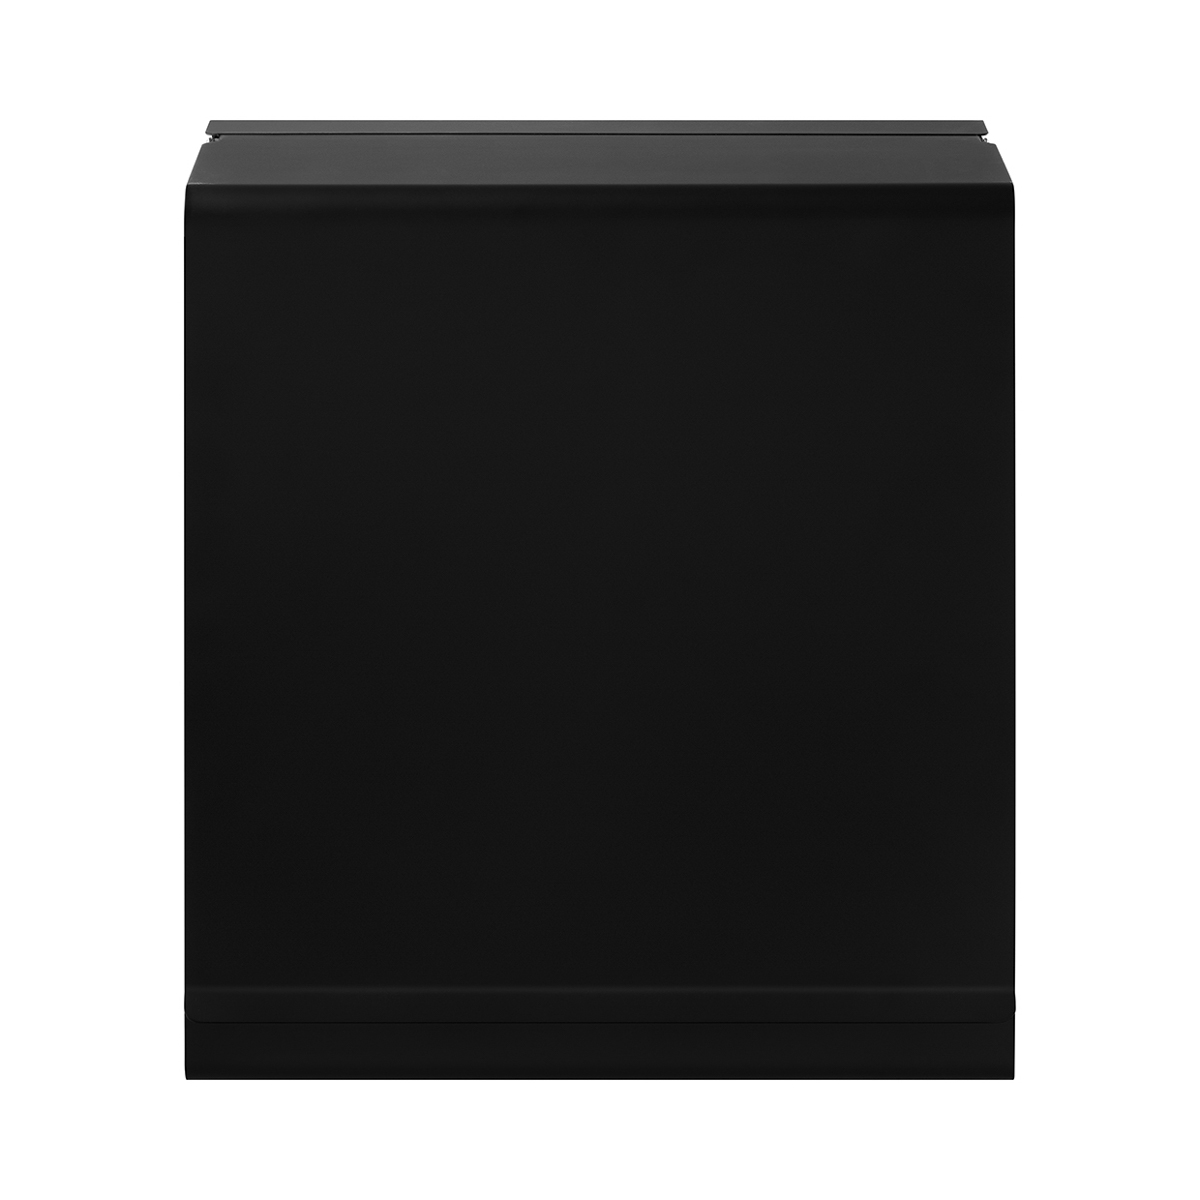 Papiertuchspender -NEXIO- Black. Material: Edelstahl pulverbeschichtet / Plaxiglas / Arcylglas. Von Blomus.